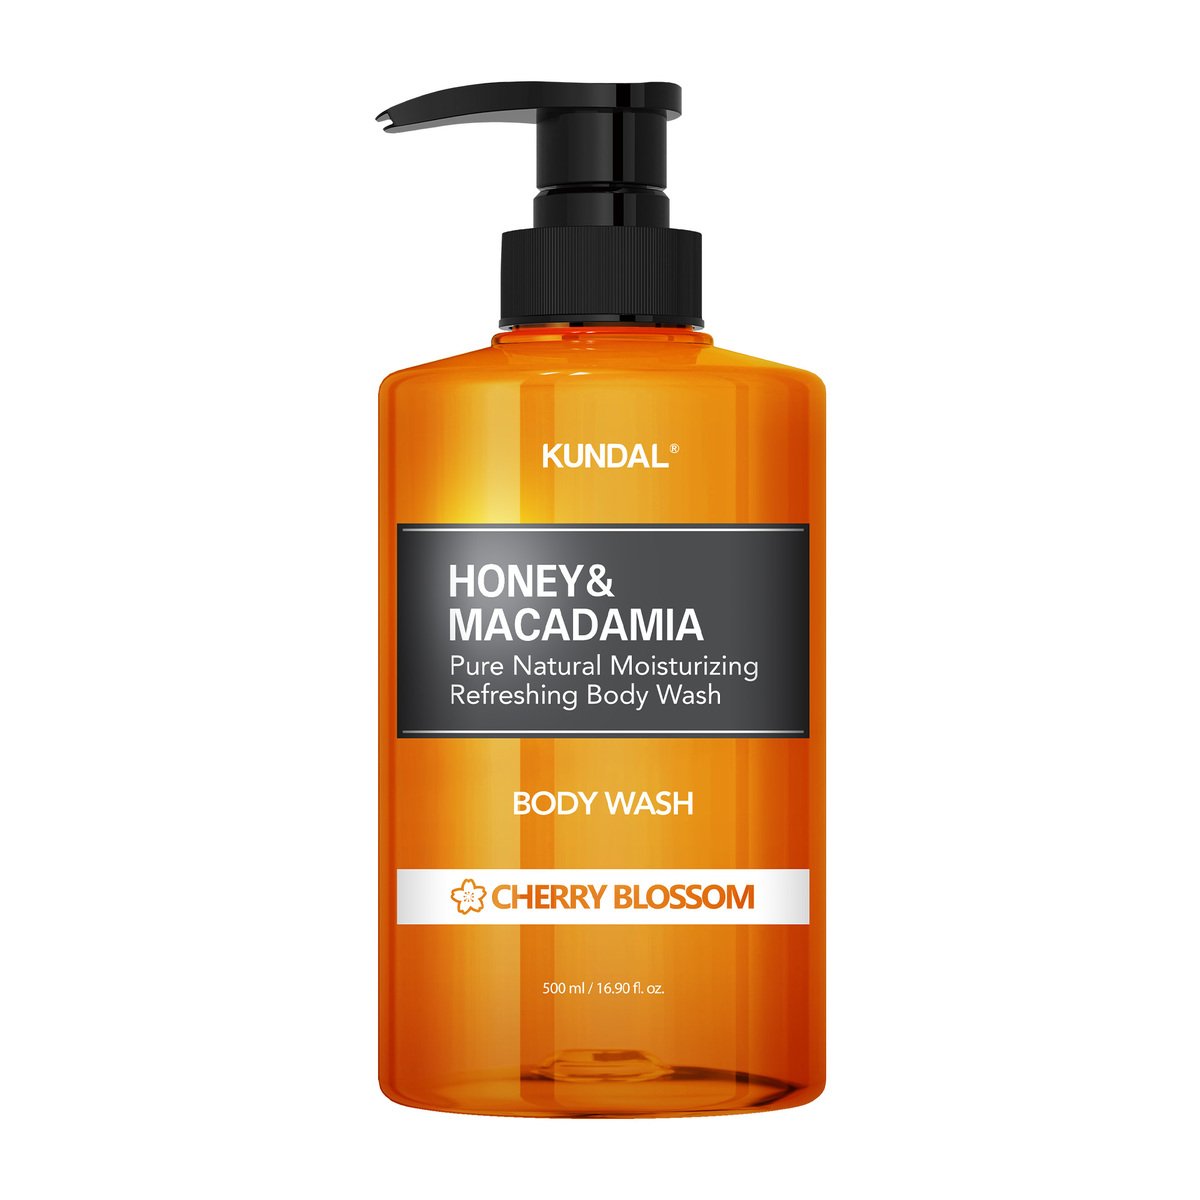 اشتري قم بشراء Kundal Honey & Macadamia Cherry Blossom Body Wash 500 ml Online at Best Price من الموقع - من لولو هايبر ماركت Shower Gel&Body Wash في الامارات